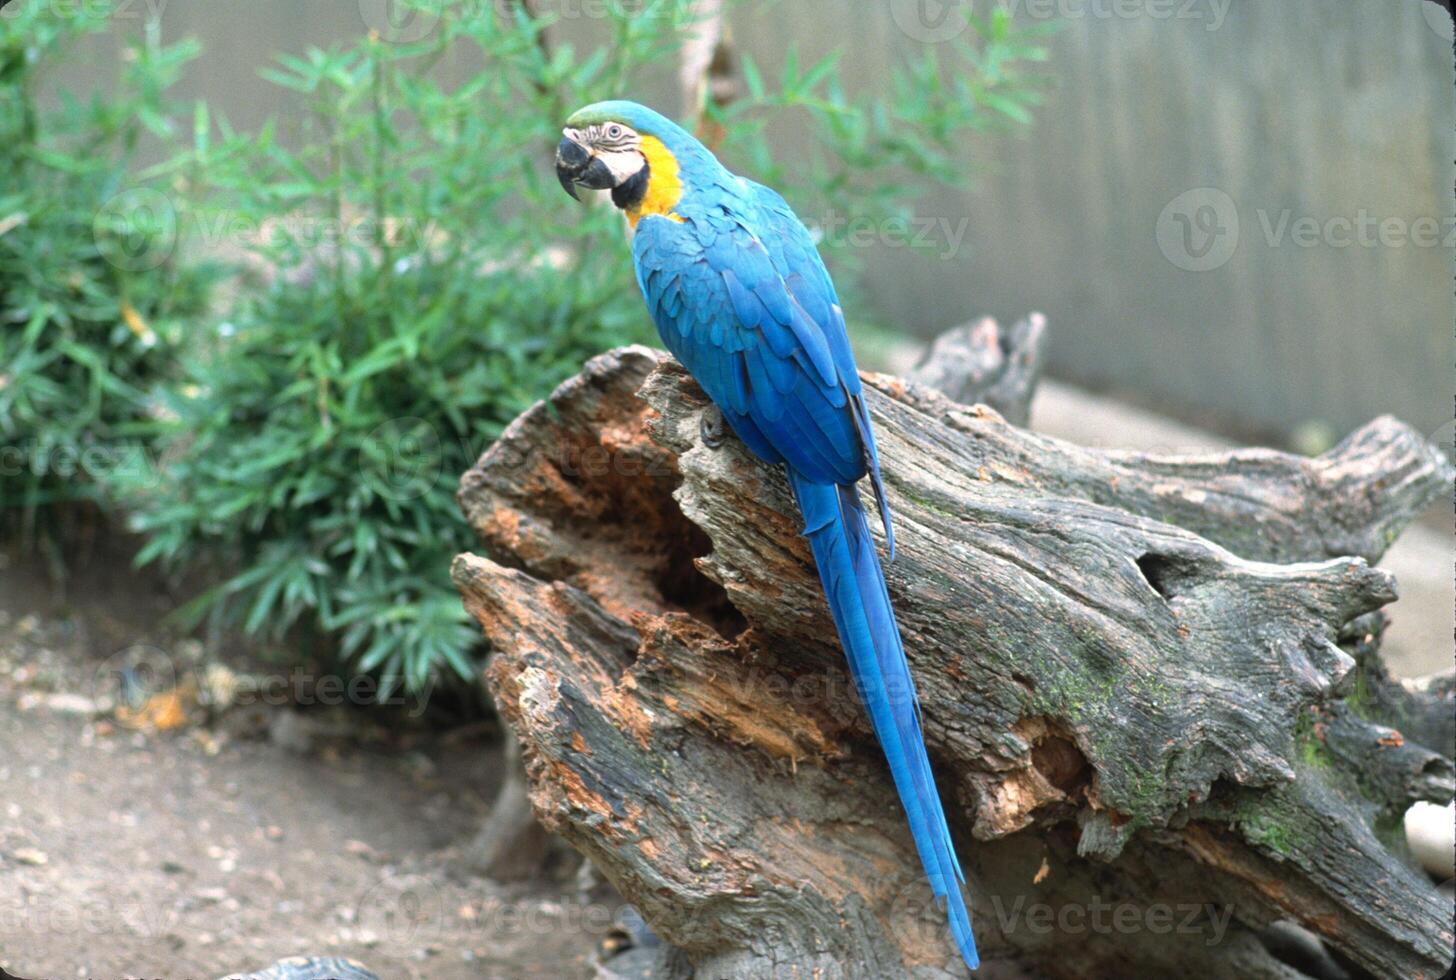 le bleu et jaune ara, aussi connu comme le bleu et or ara, est une grand perroquet originaire de à le néotropiques avec une principalement bleu dos, lumière Jaune Orange ventre, et vert tête plumes. photo